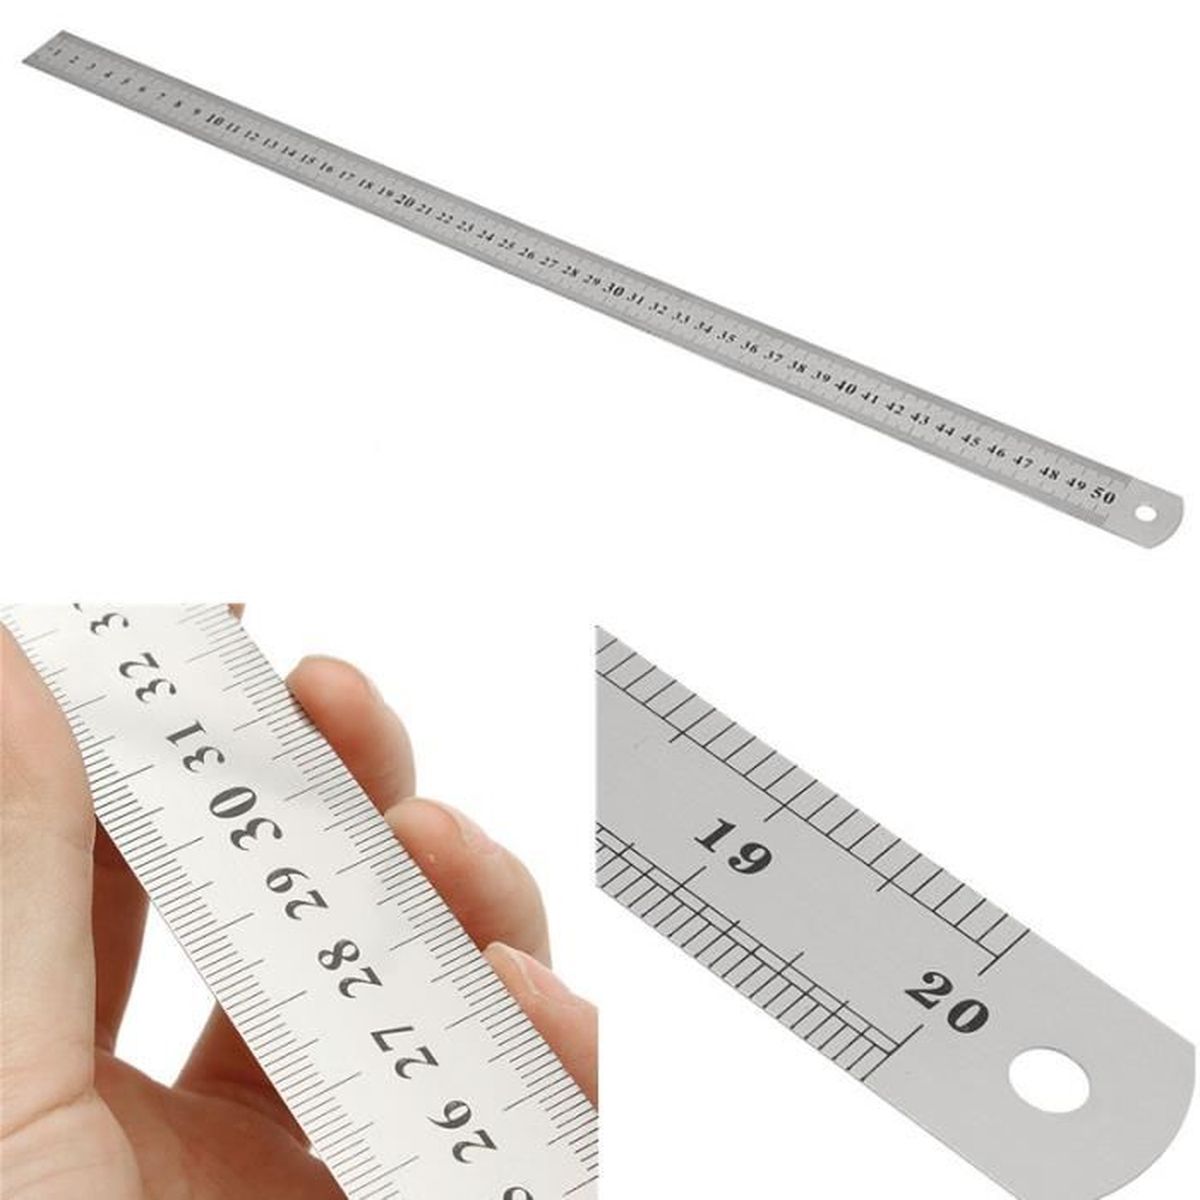 Меряла линейкой. Stainless Steel measuring Scale. Линейка измерить. Измерение линейкой. Линейка для измерения ремней.